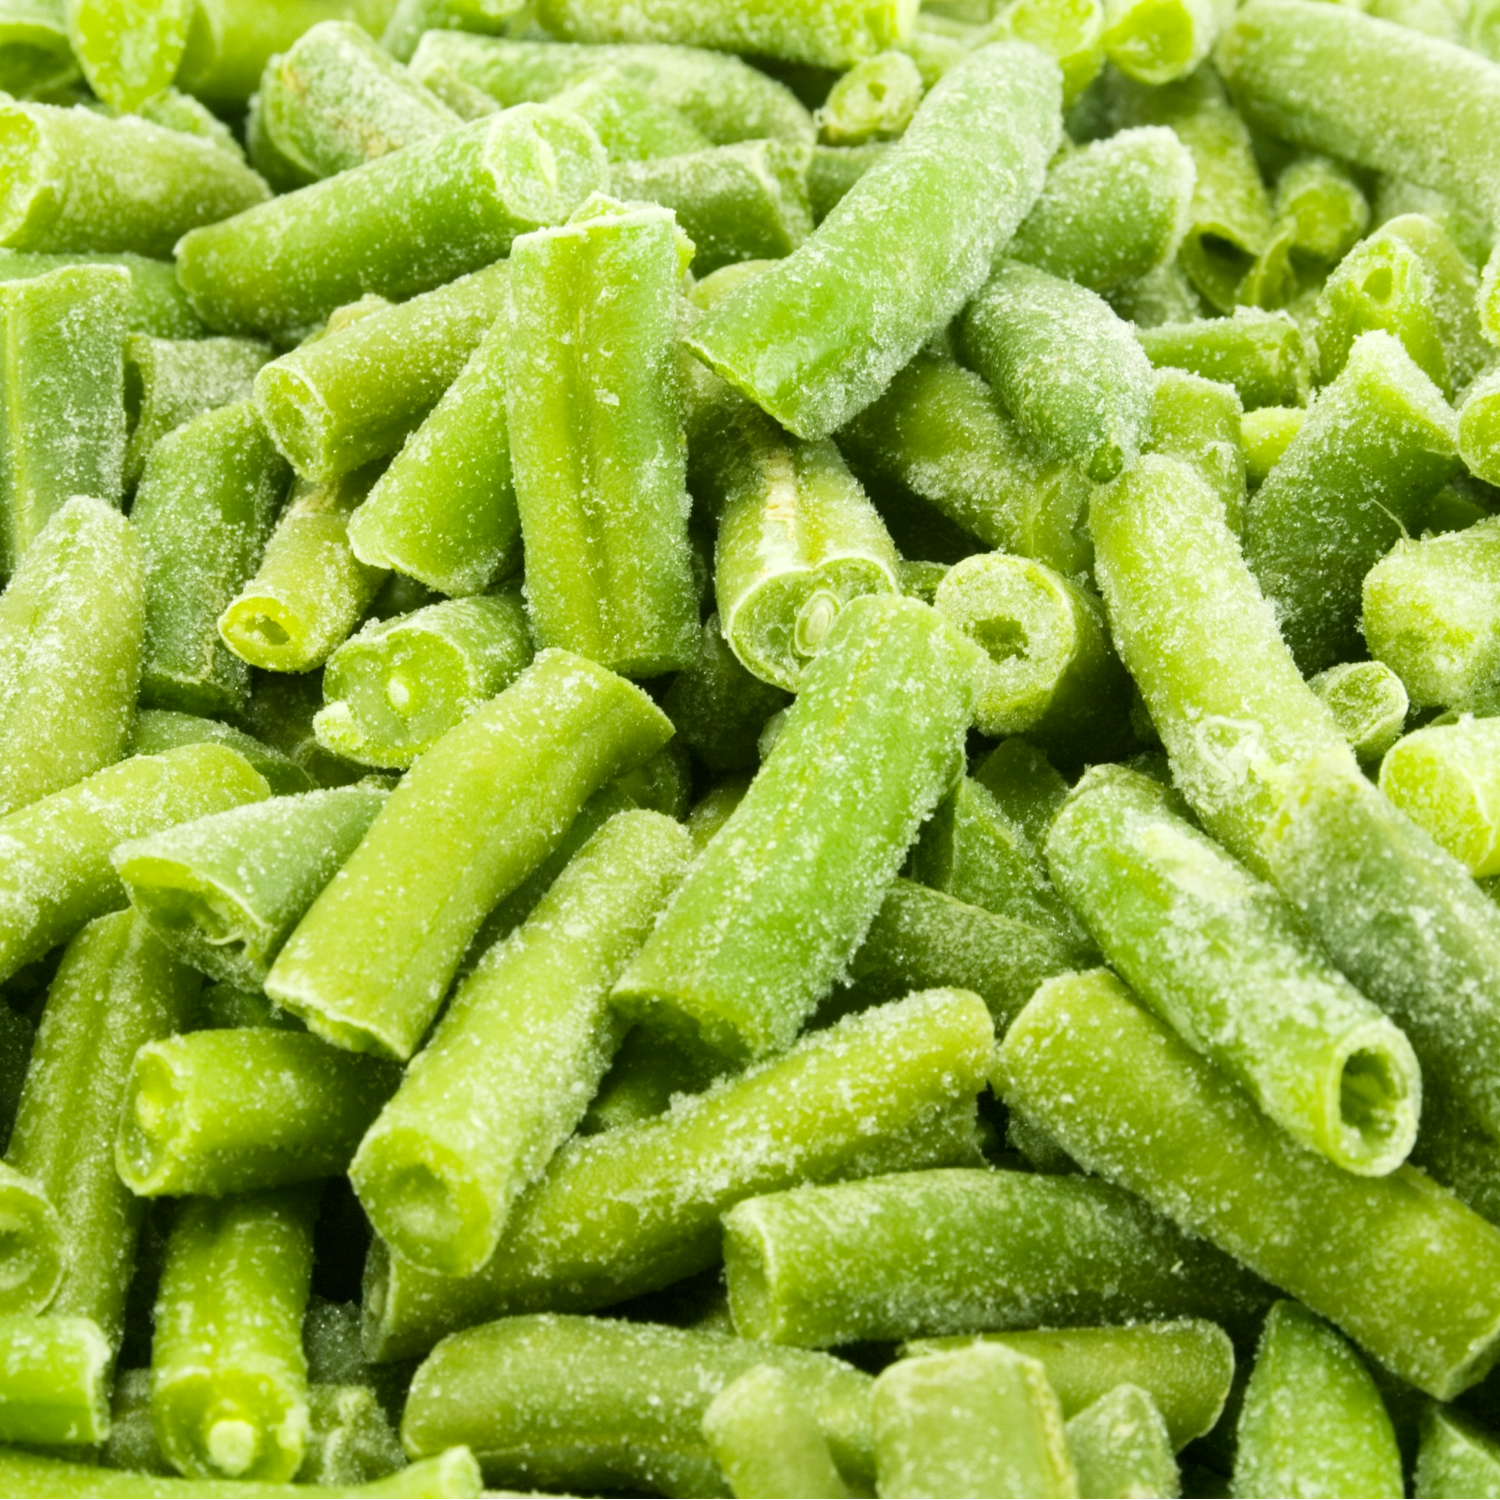 Frozen Cut Green Beans